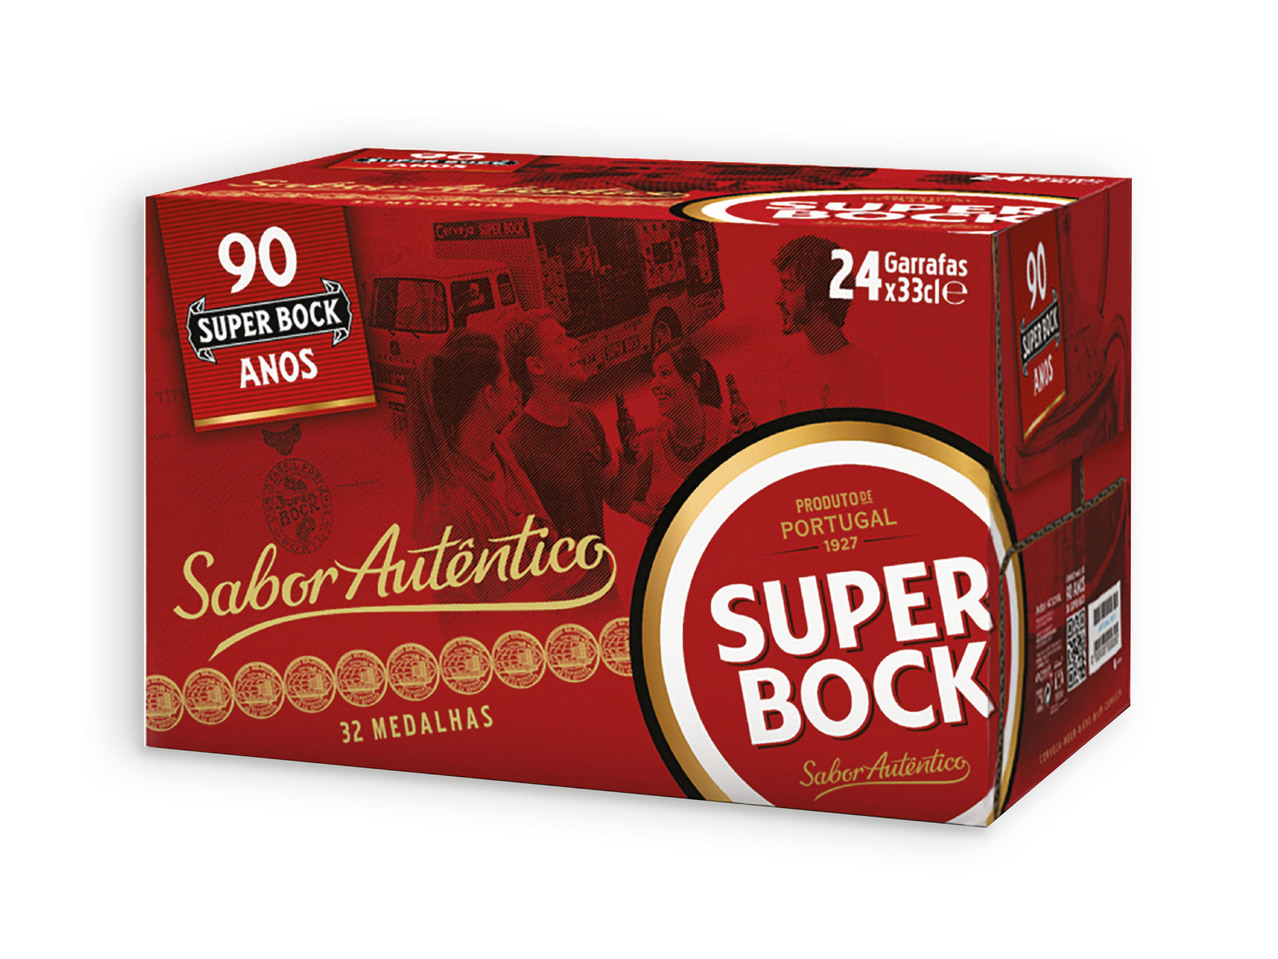 SUPER BOCK(R) Cerveja Pack Económico